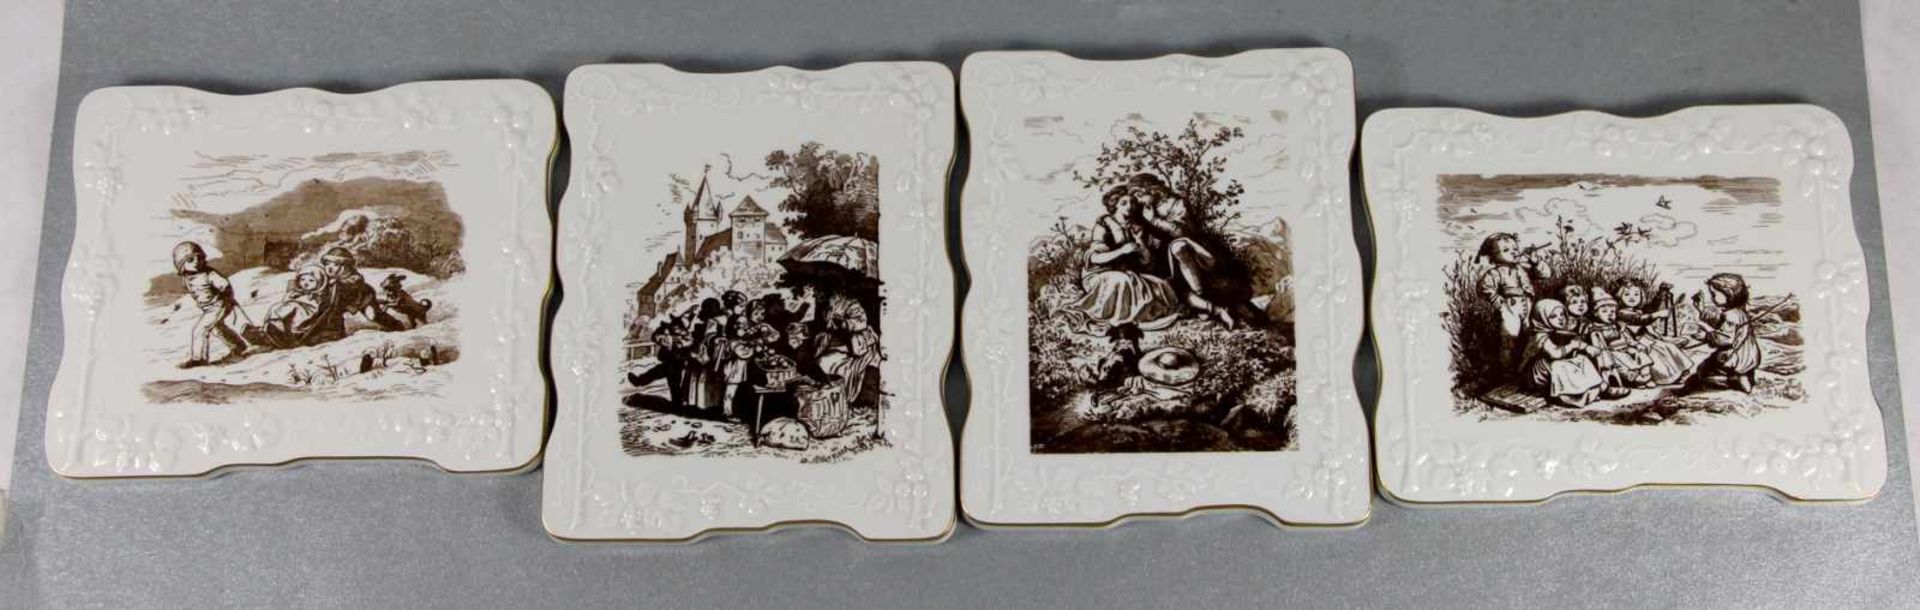 Satz Meissen-Wandbilder20. Jhd., 4 Stk., Meissen, rechteckige Porzellanplatten mit Motiven nach